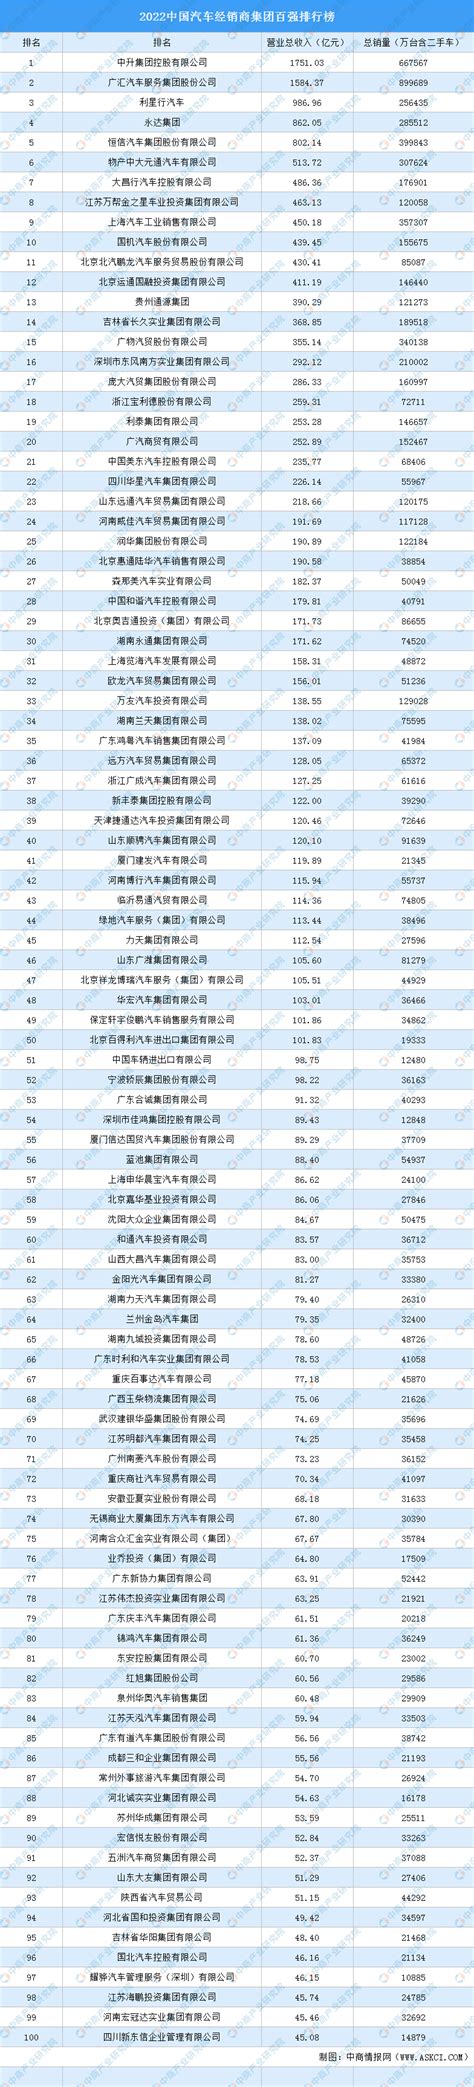 2017年中国汽车流通行业经销商百强排行榜（附完整名单）-排行榜-中商情报网